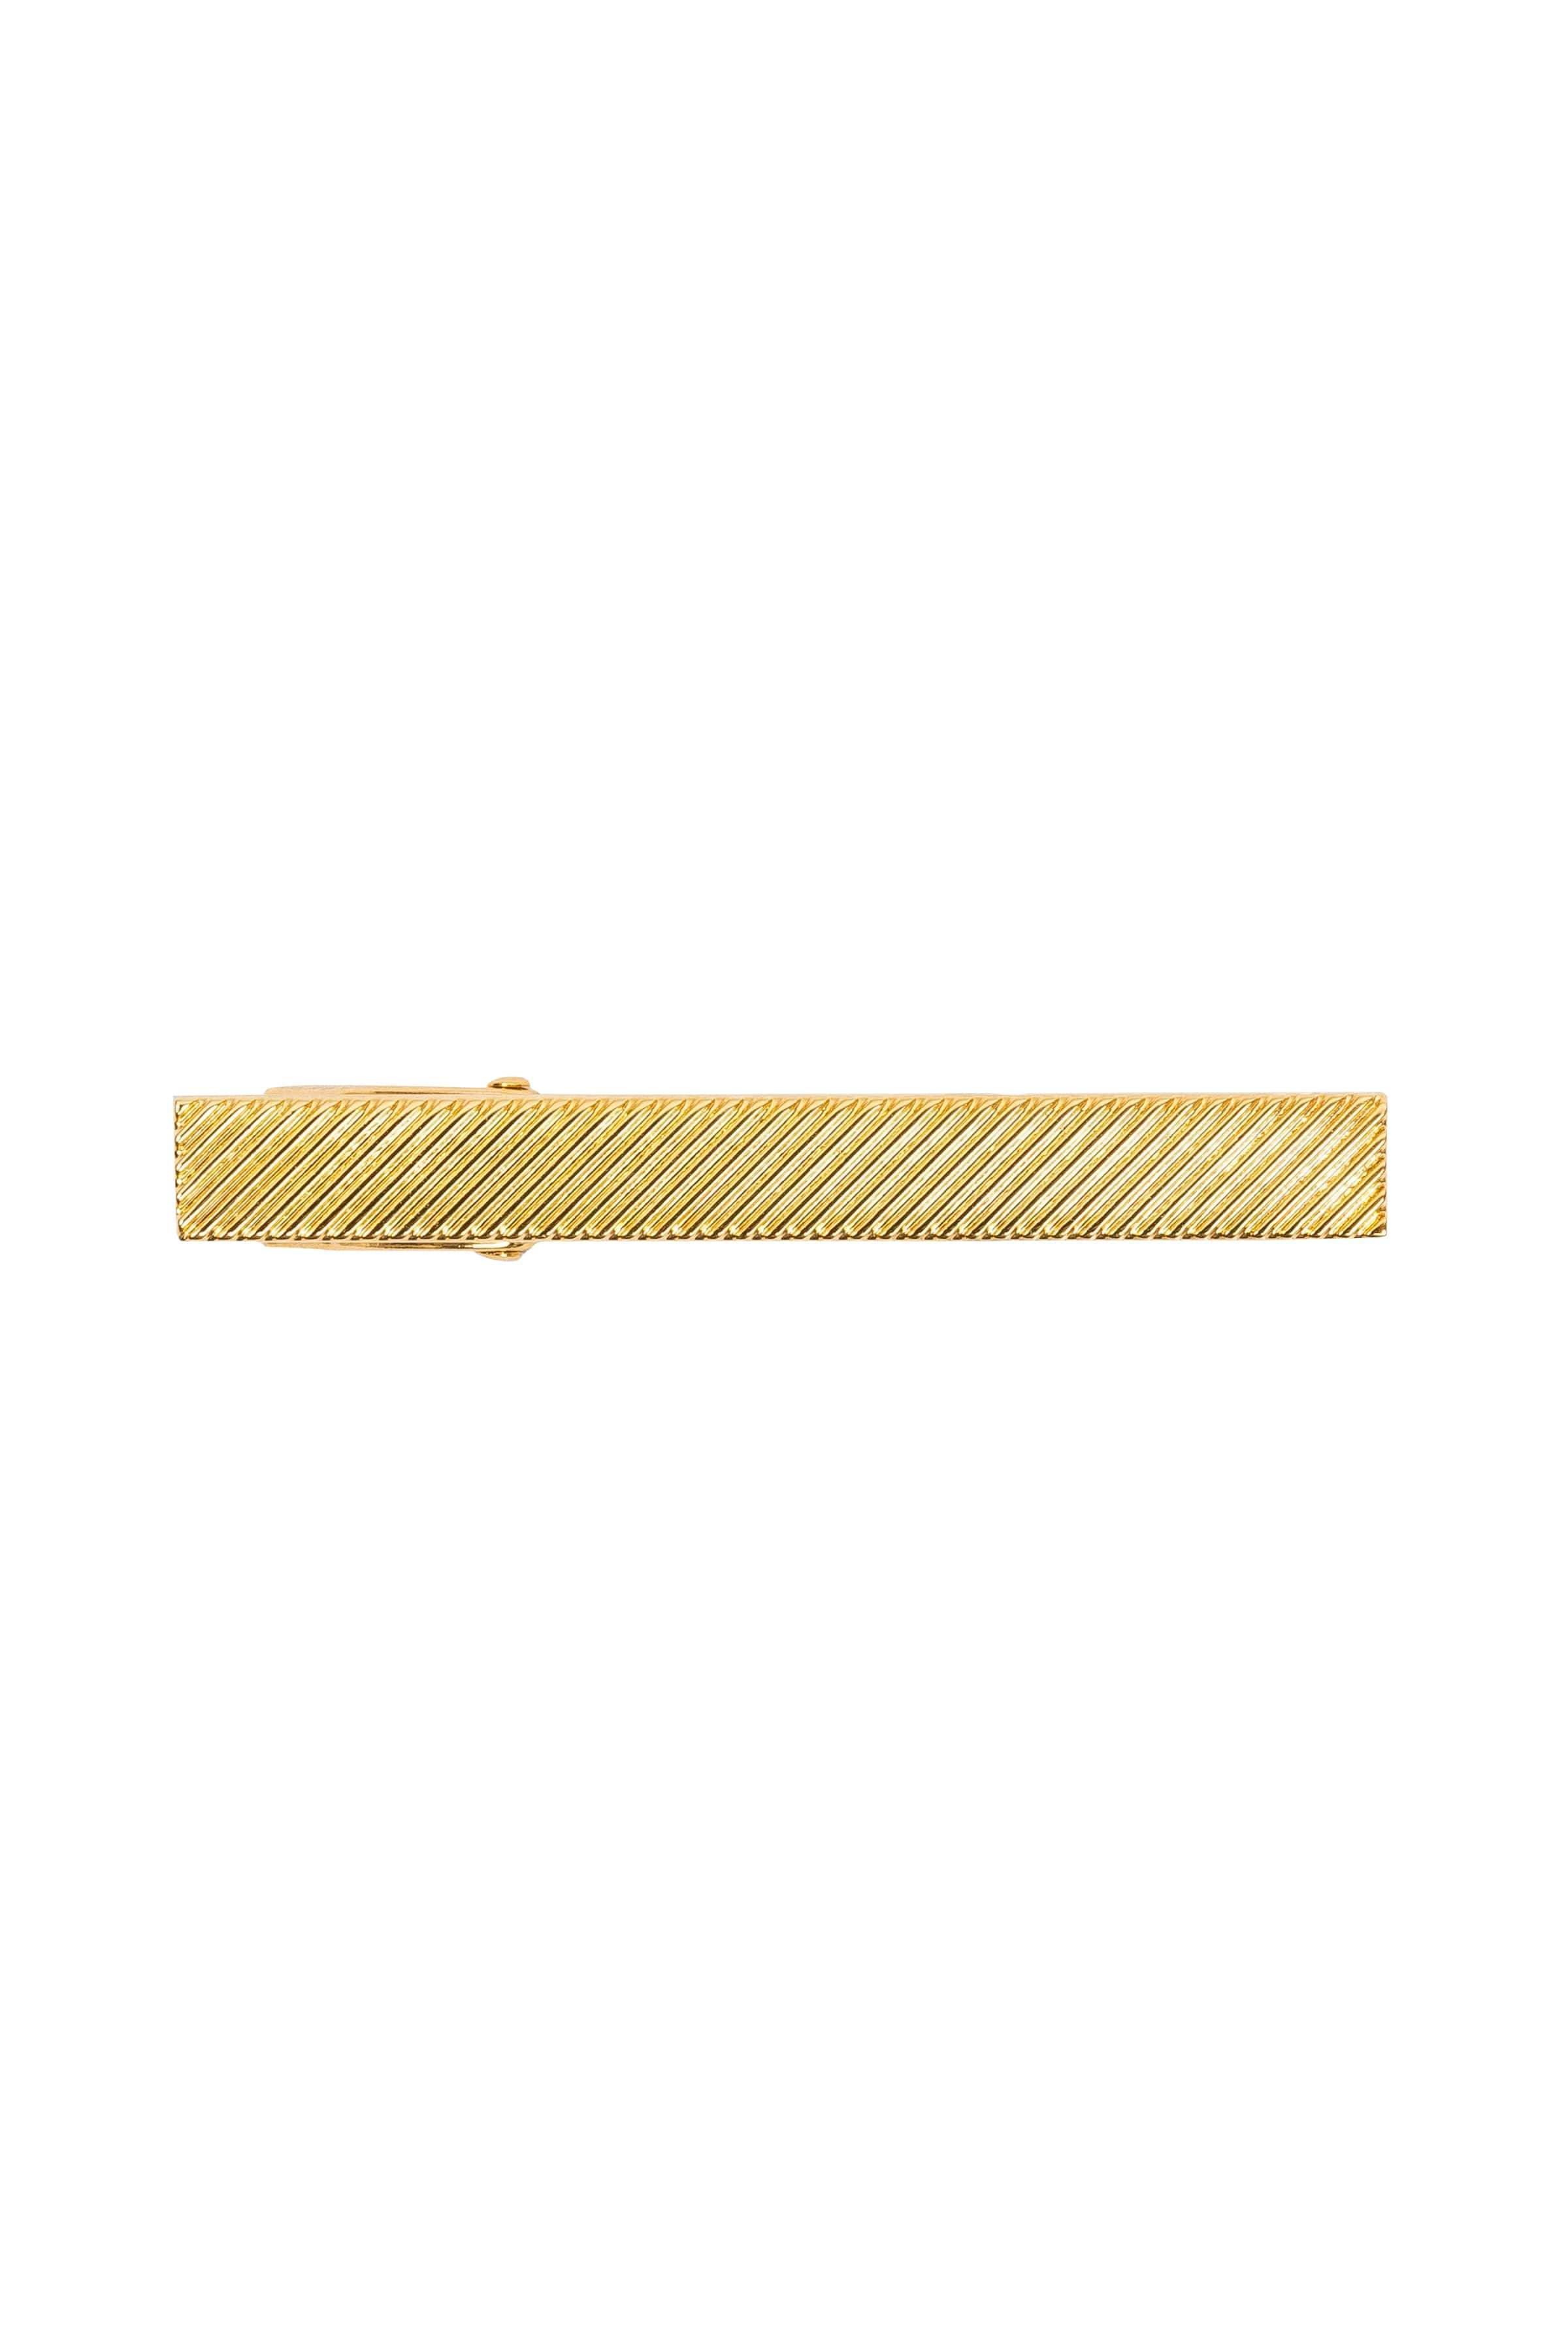 AN IVY Slipsenål Engraved Golden Bar 5 cm